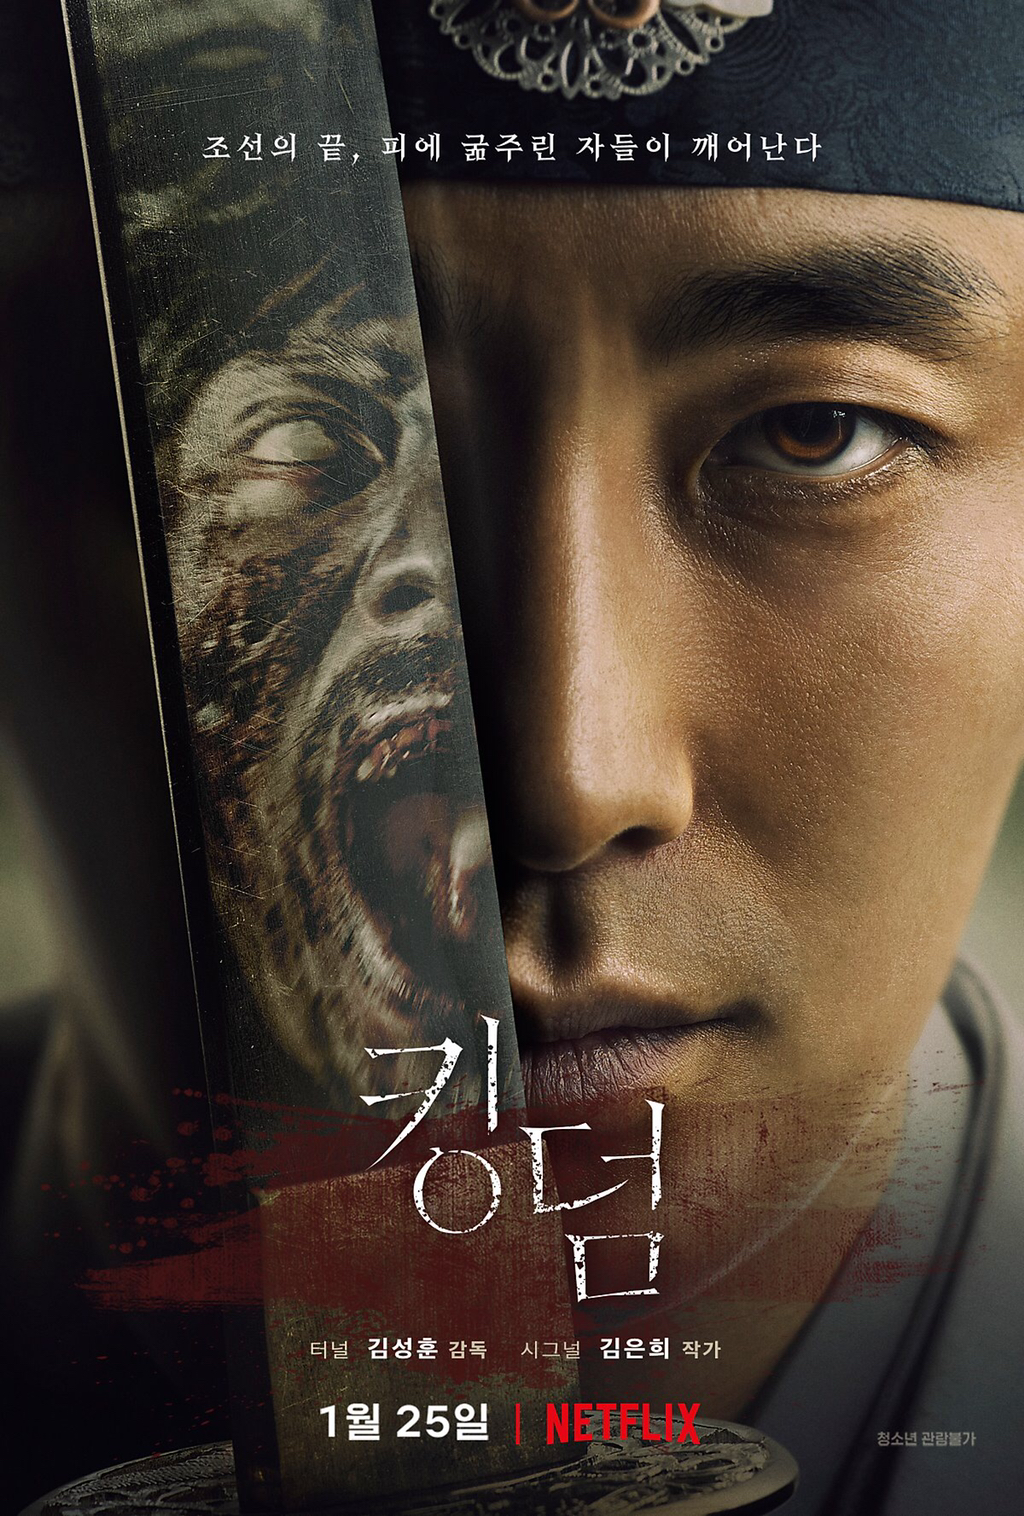 타임지가 선정한 넷플릭스에서 볼만한 한국 드라마 10작품